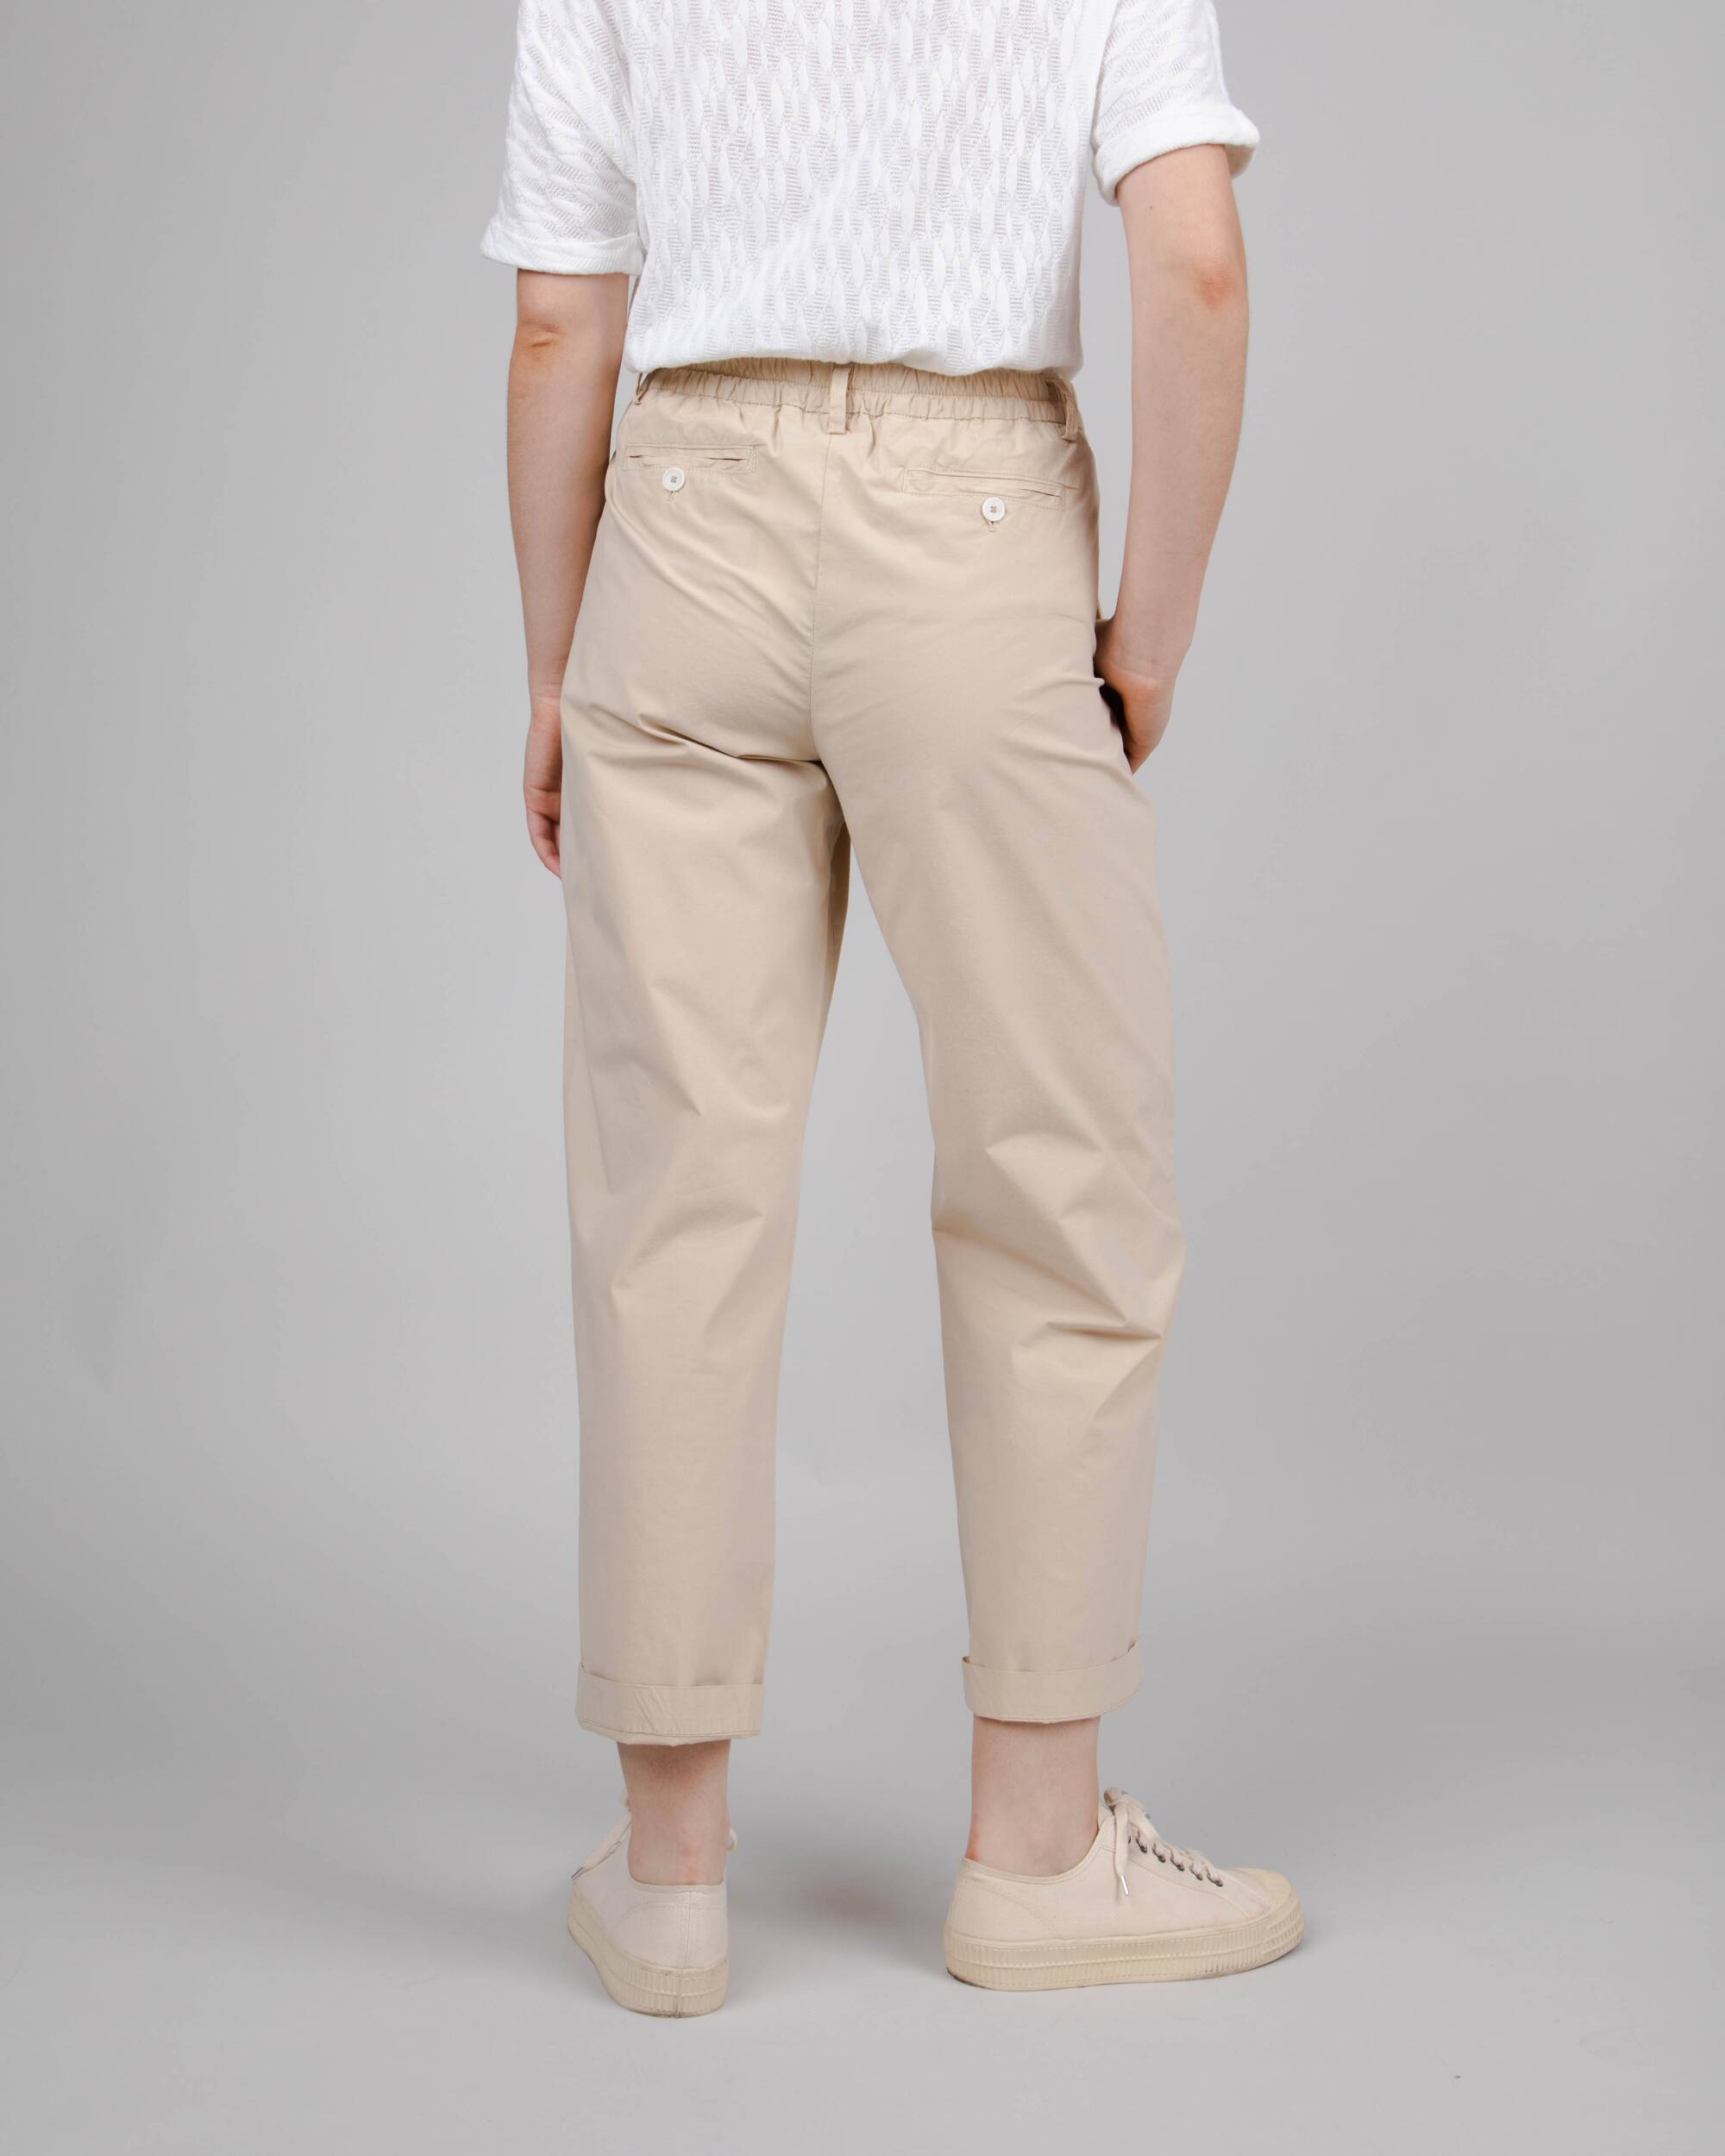 Pantalon chino beige élastique en coton biologique de Brava Fabrics